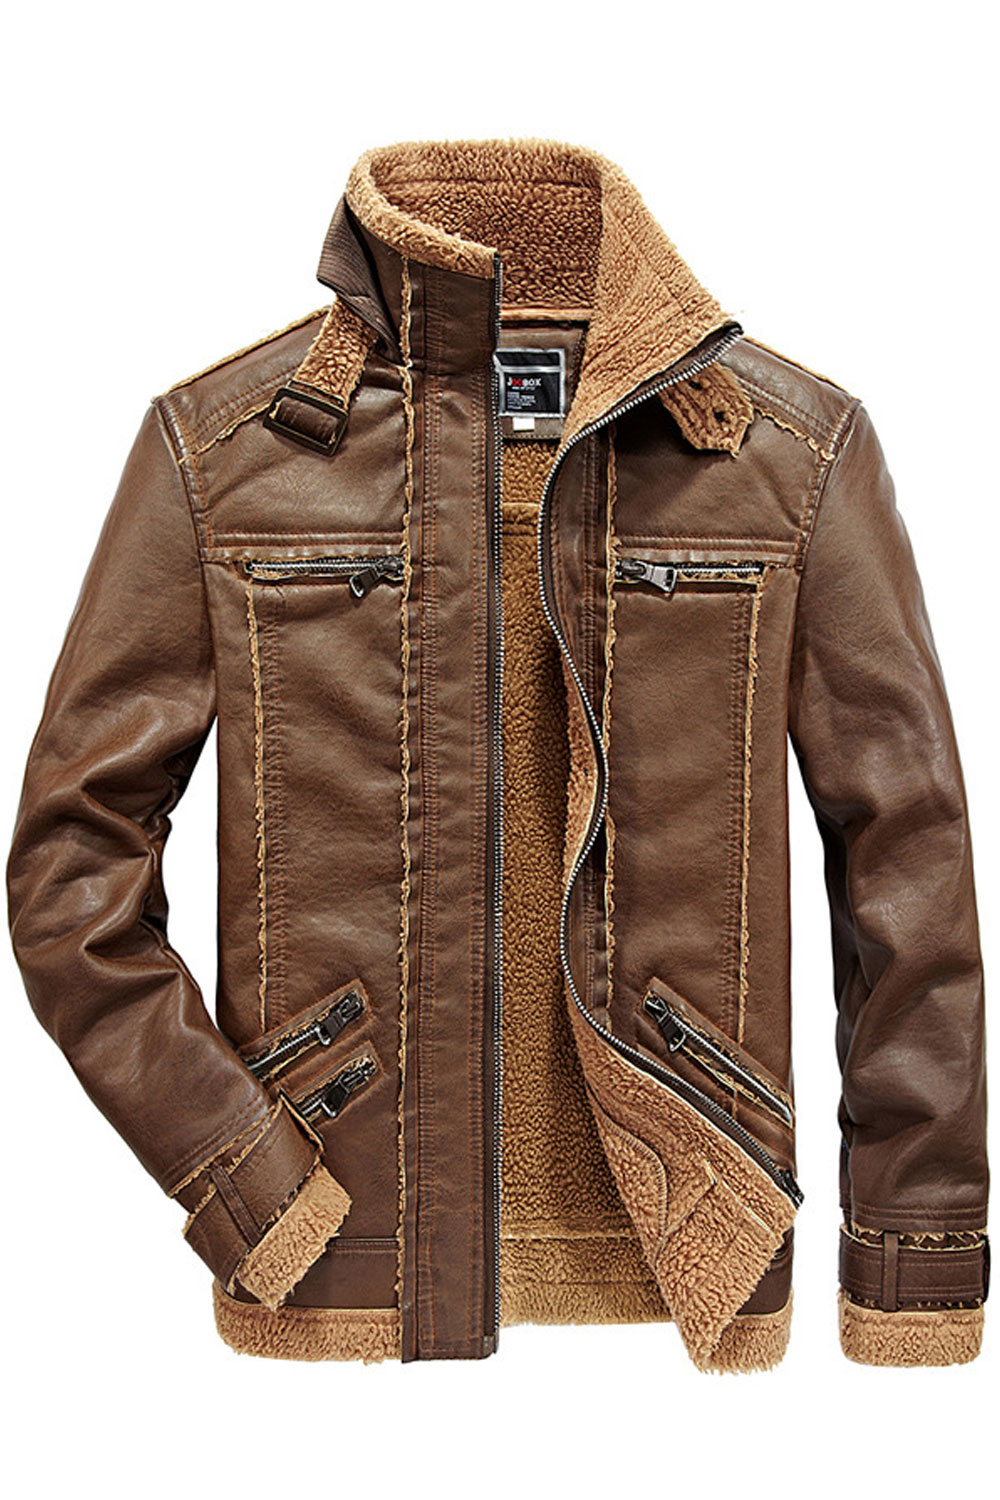 zara man leather jacket prices